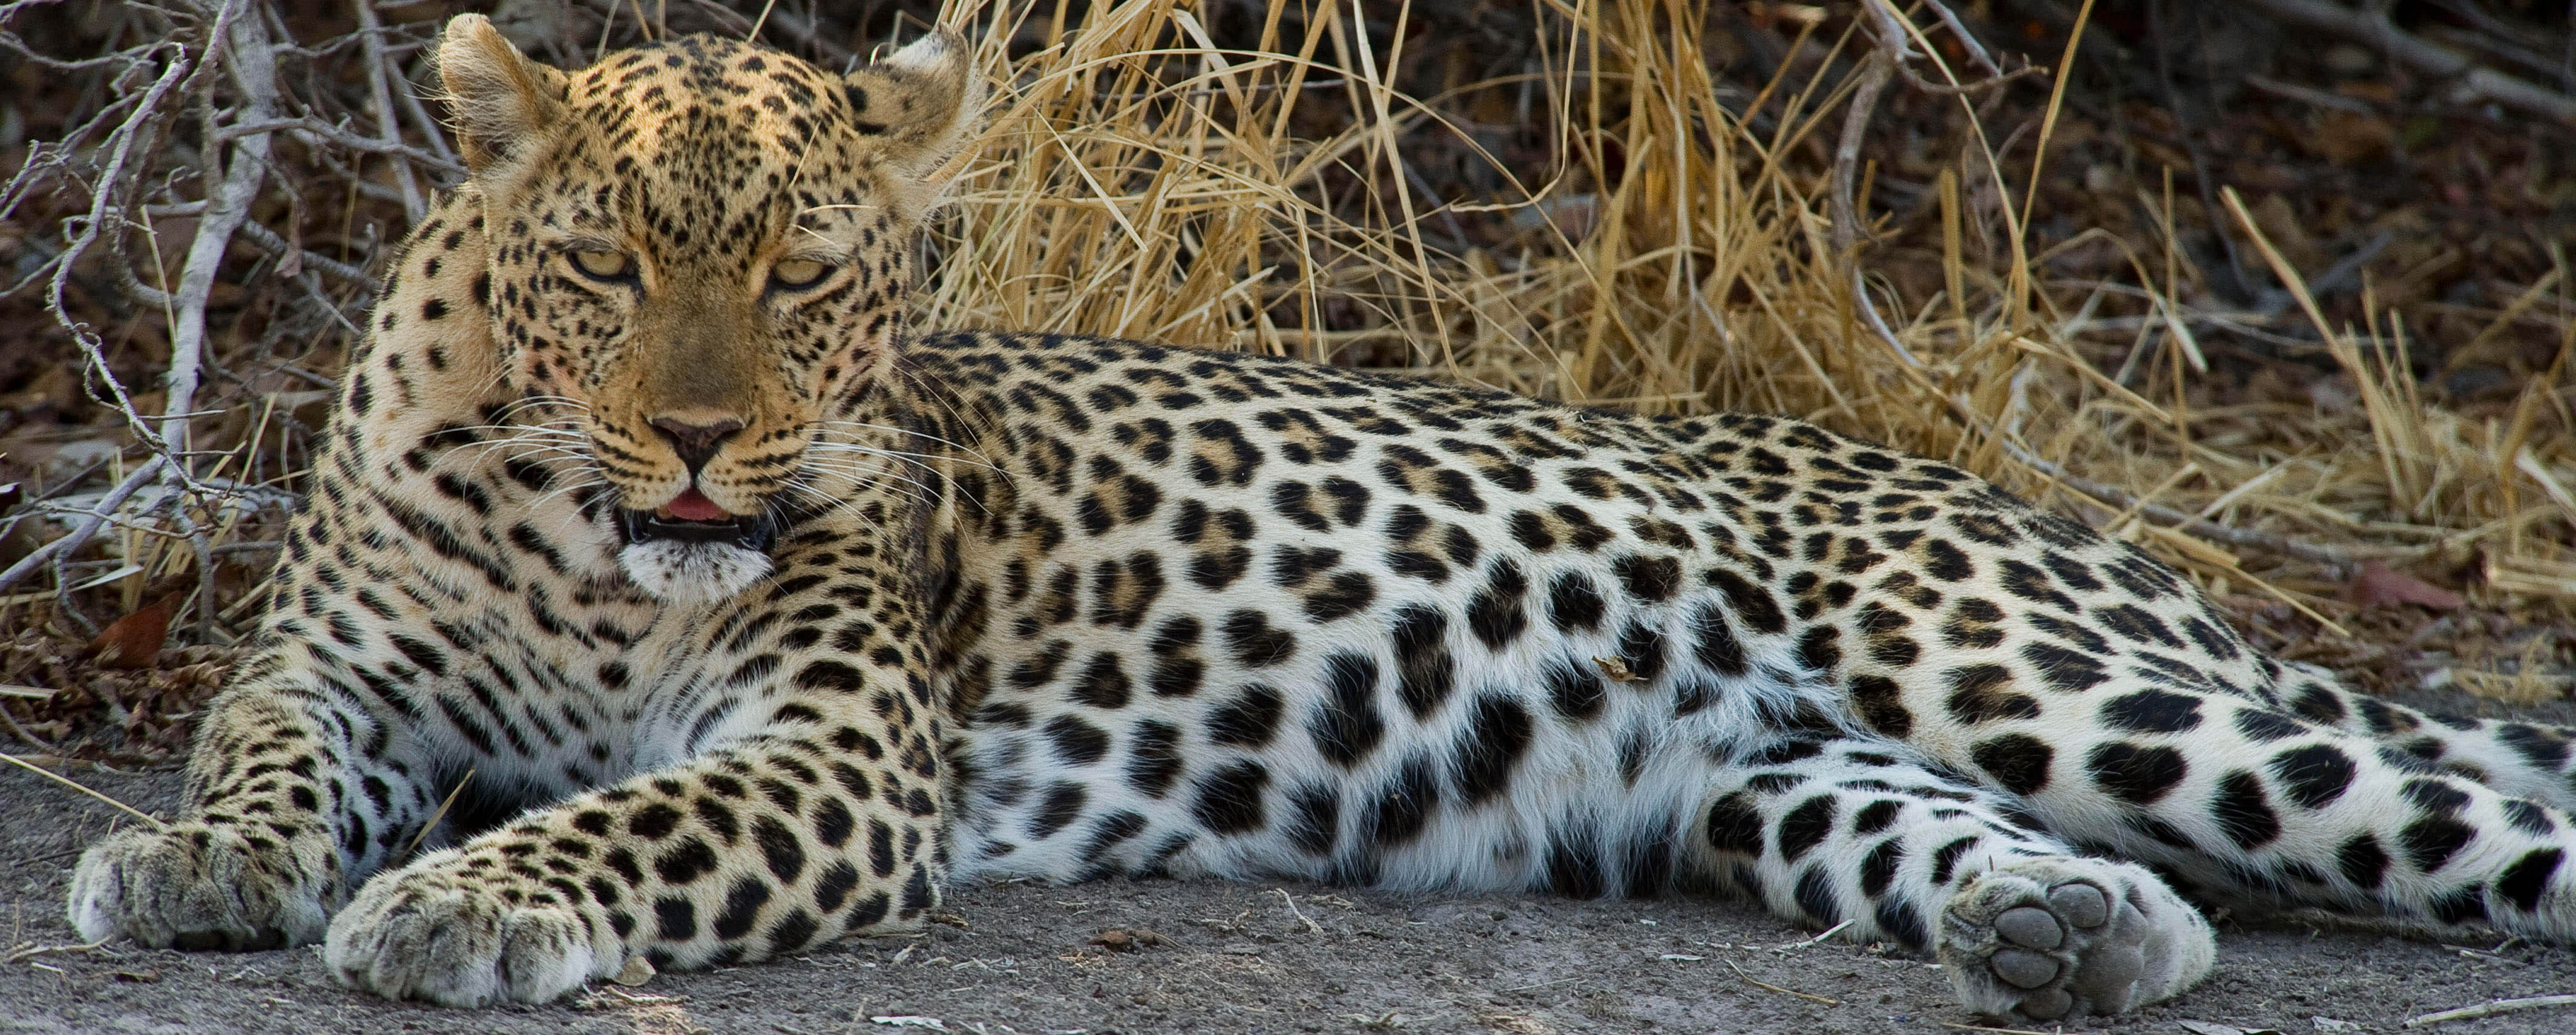 Leopard in South Luangwa, Zambia | J. Goetz